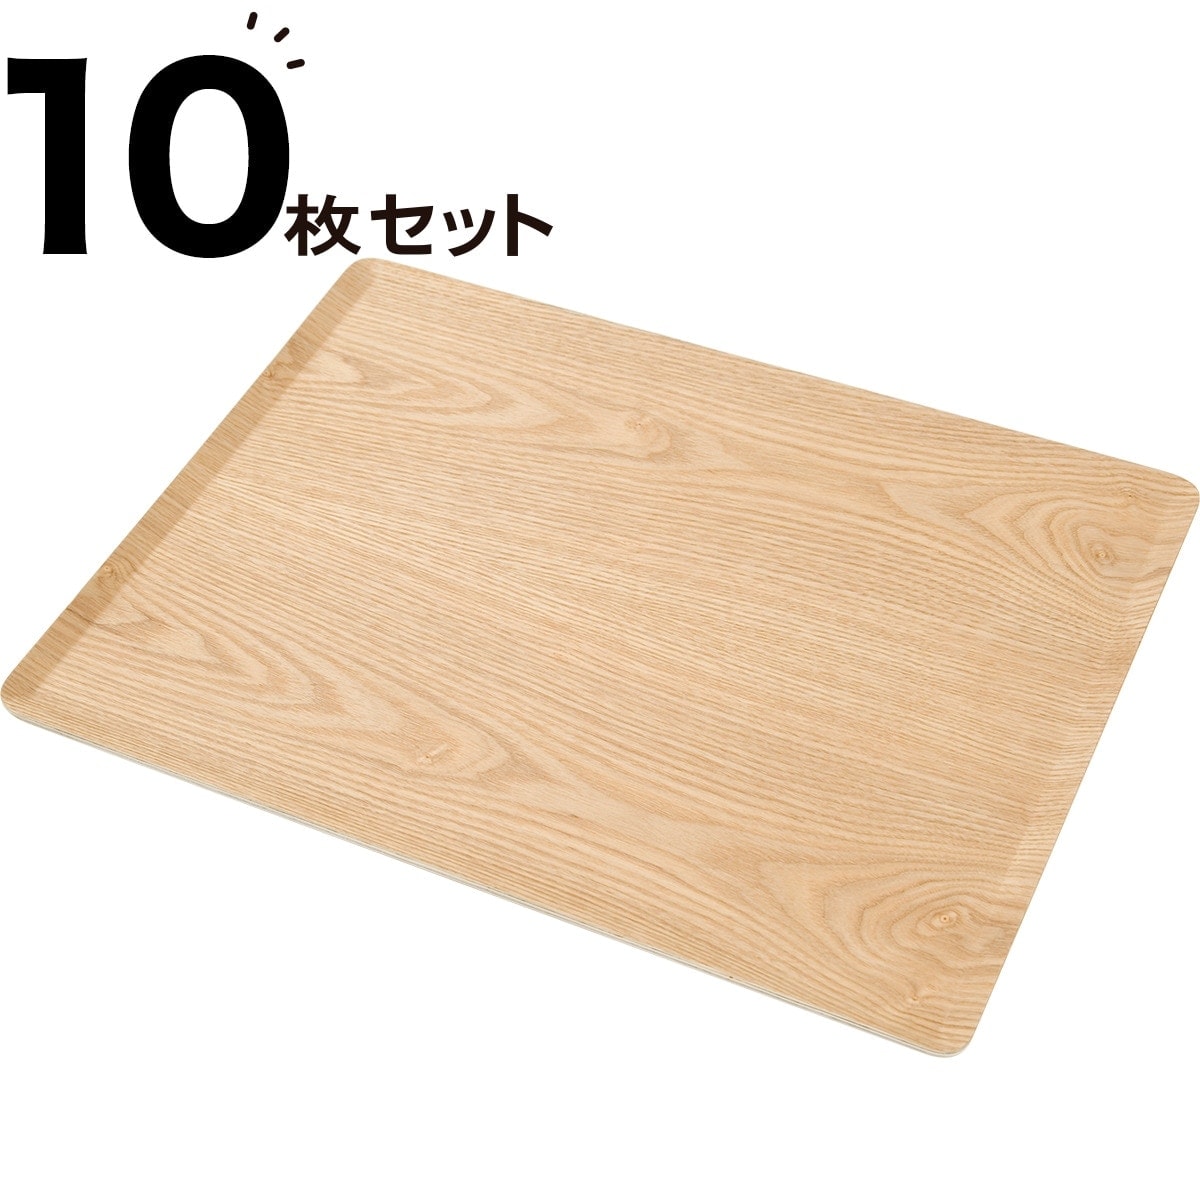 [幅46cm] すべりにくい木製トレー(L ヤナギ)10枚セット  【・玄関先迄納品】